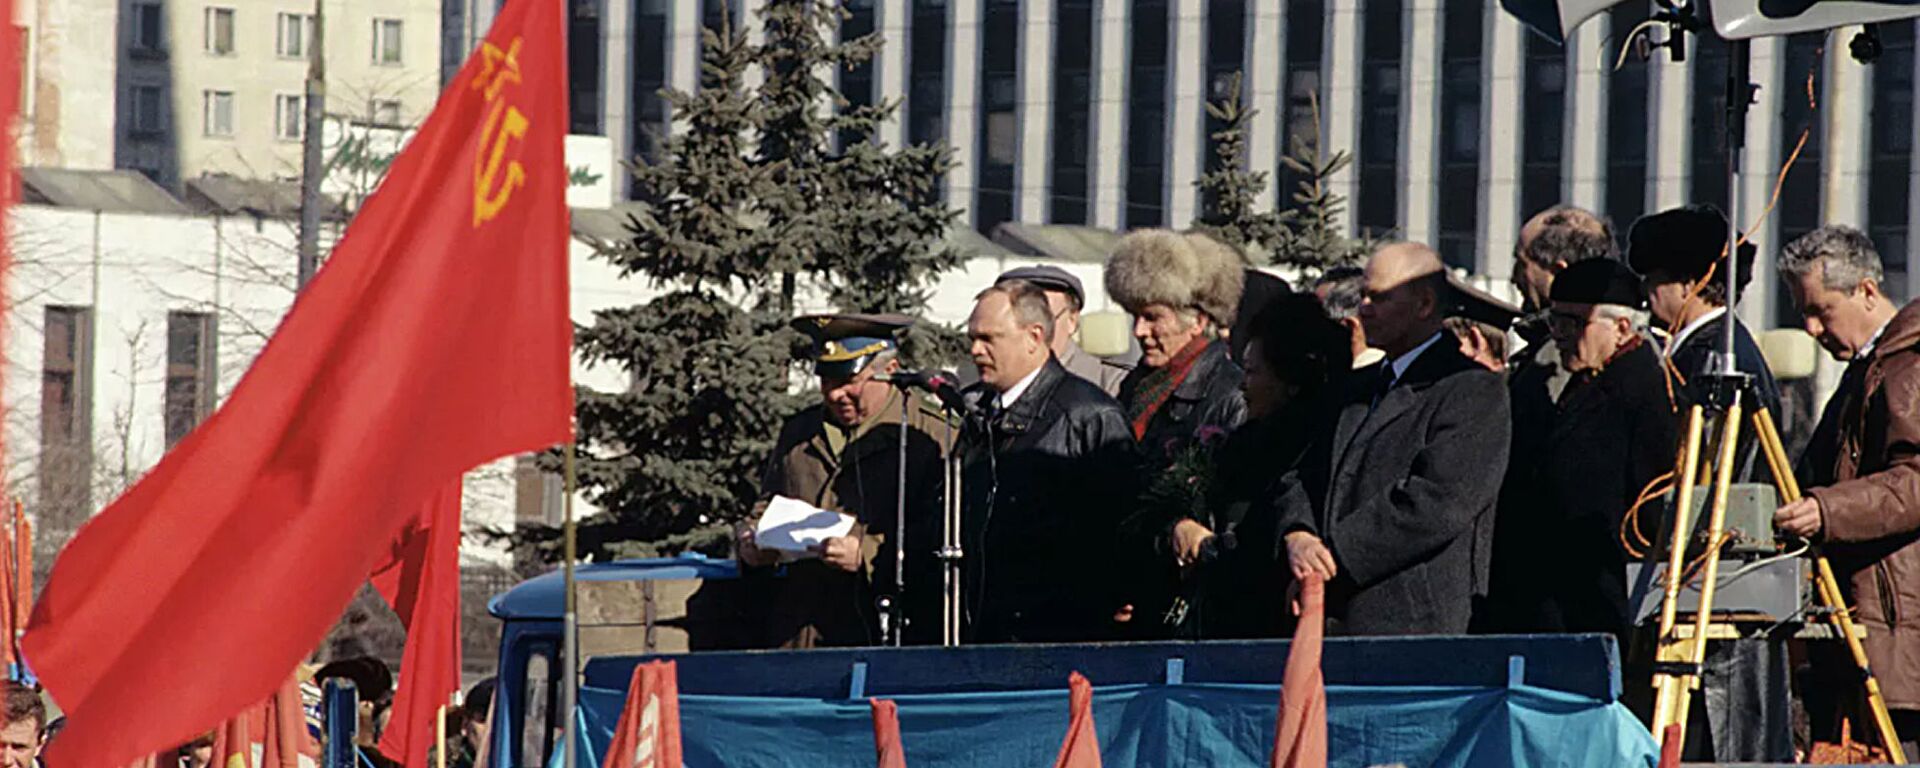 Mitingas Kalužskajos aikštėje Maskvoje, kuris sutapo su 1991 m. kovo 17 d. Visos Sąjungos referendumo dėl TSRS išsaugojimo metinėmis - Sputnik Lietuva, 1920, 08.03.2021